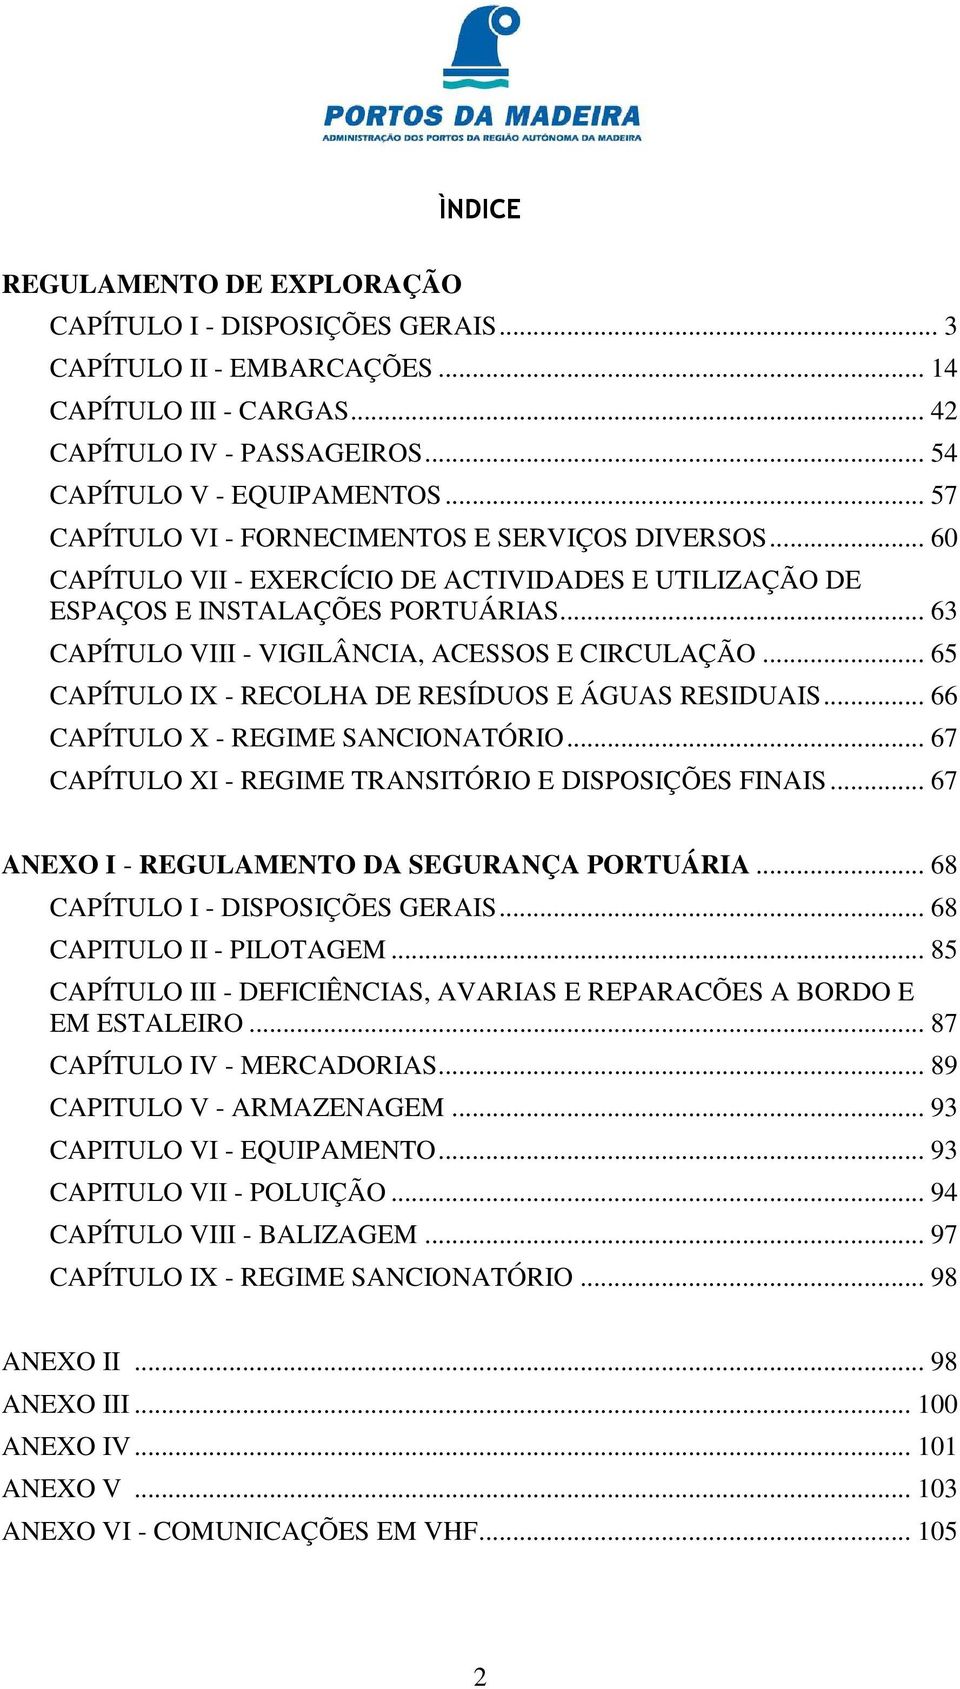 .. 63 CAPÍTULO VIII - VIGILÂNCIA, ACESSOS E CIRCULAÇÃO... 65 CAPÍTULO IX - RECOLHA DE RESÍDUOS E ÁGUAS RESIDUAIS... 66 CAPÍTULO X - REGIME SANCIONATÓRIO.